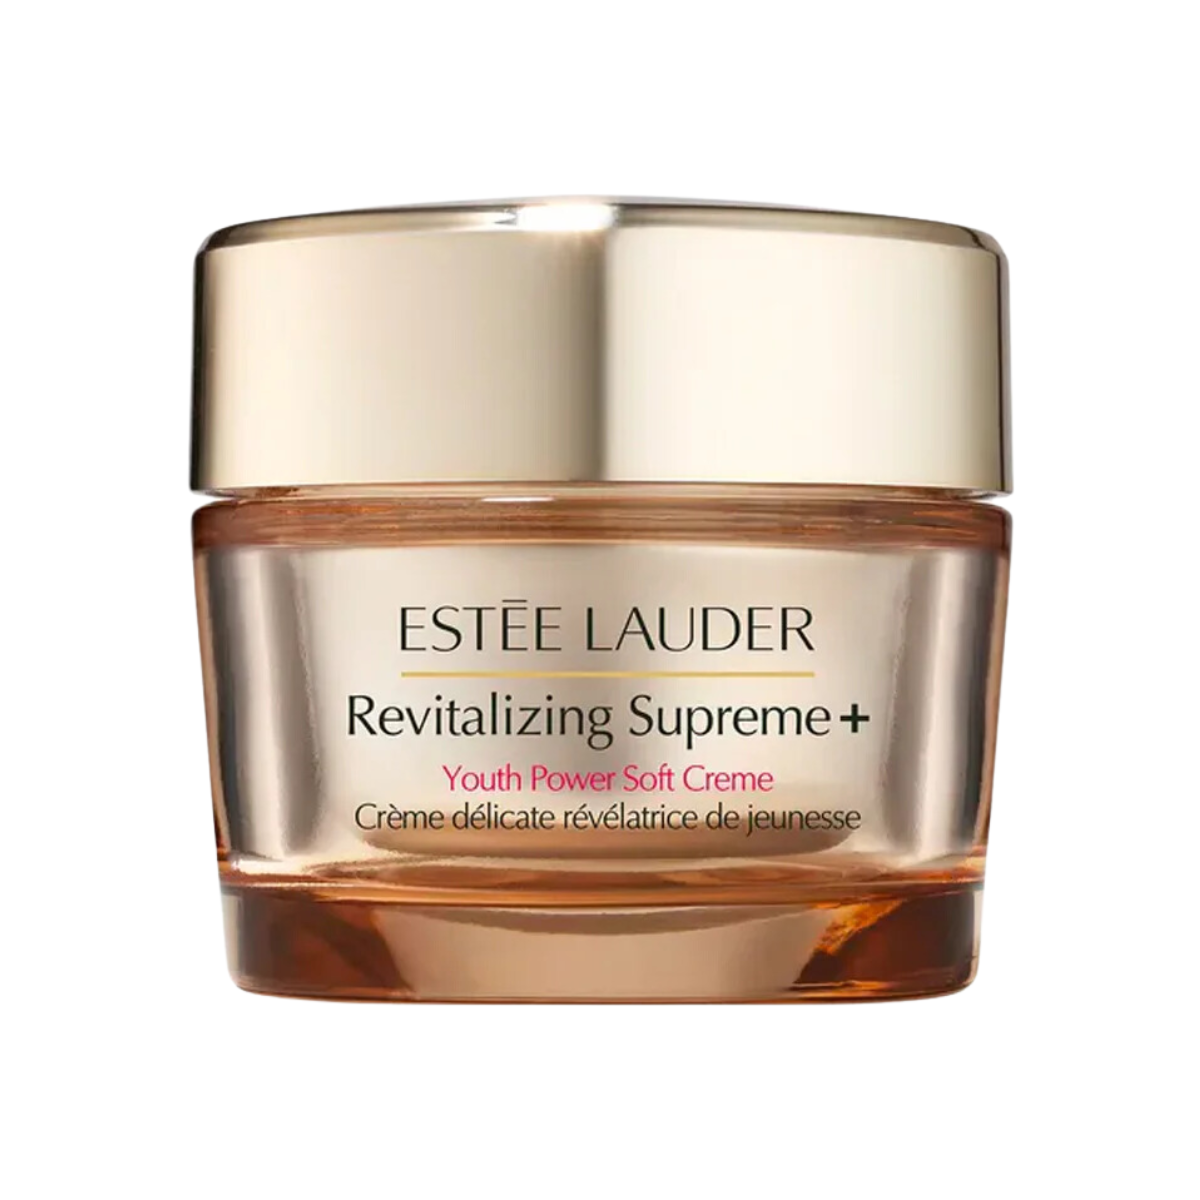 Estee lauder Revitalizing Supreme+ Youth Power Soft Crème 75ml